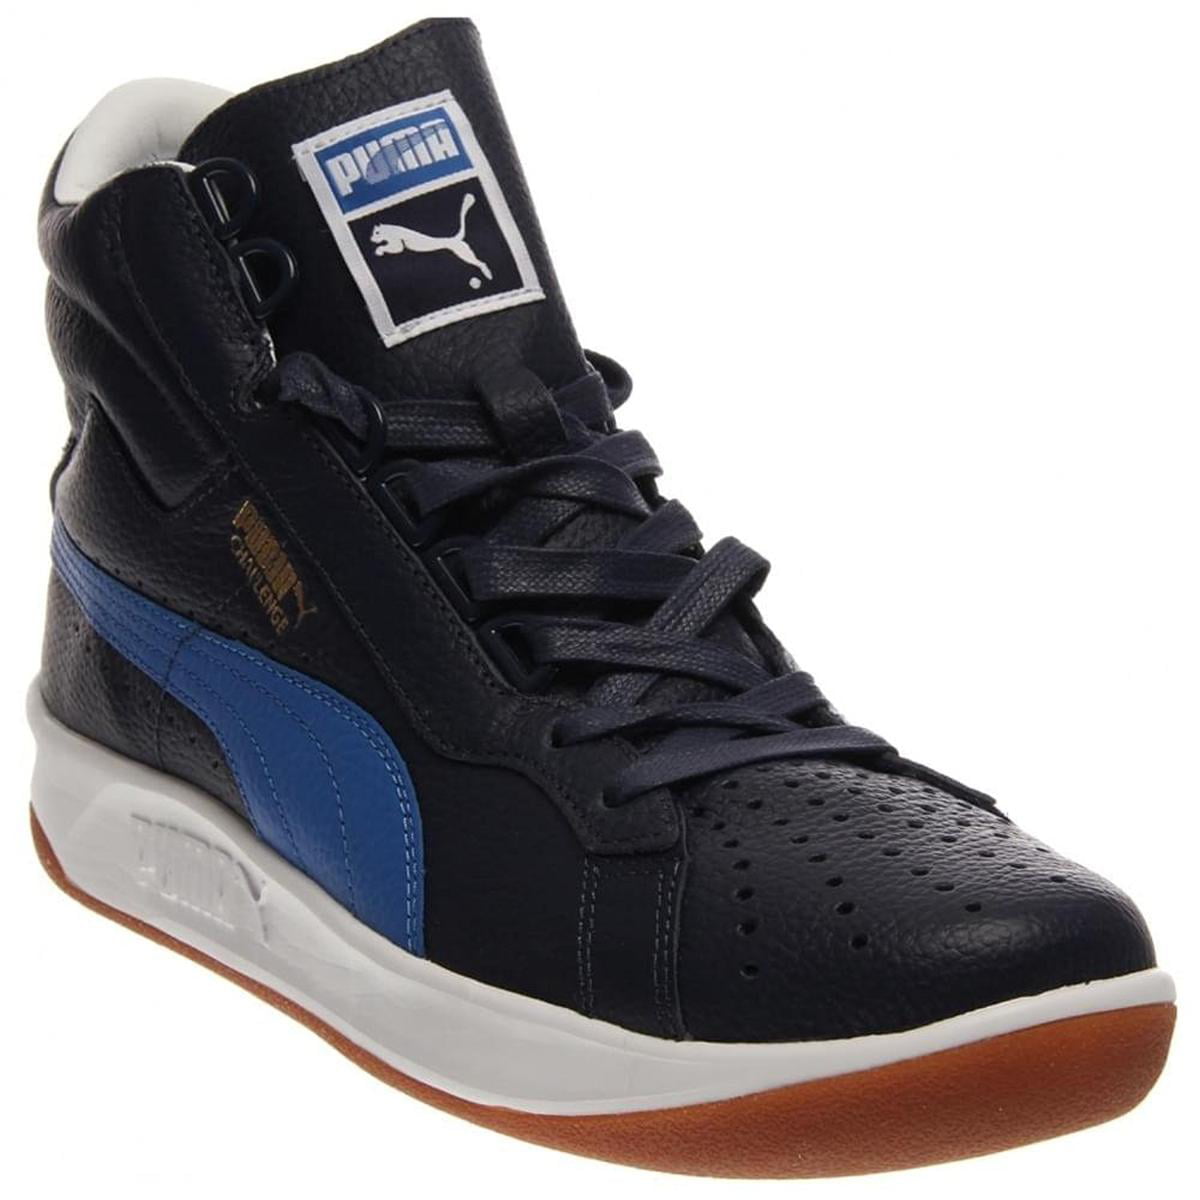 Puma Mens Navy/Blue Sneakers - Walmart.com